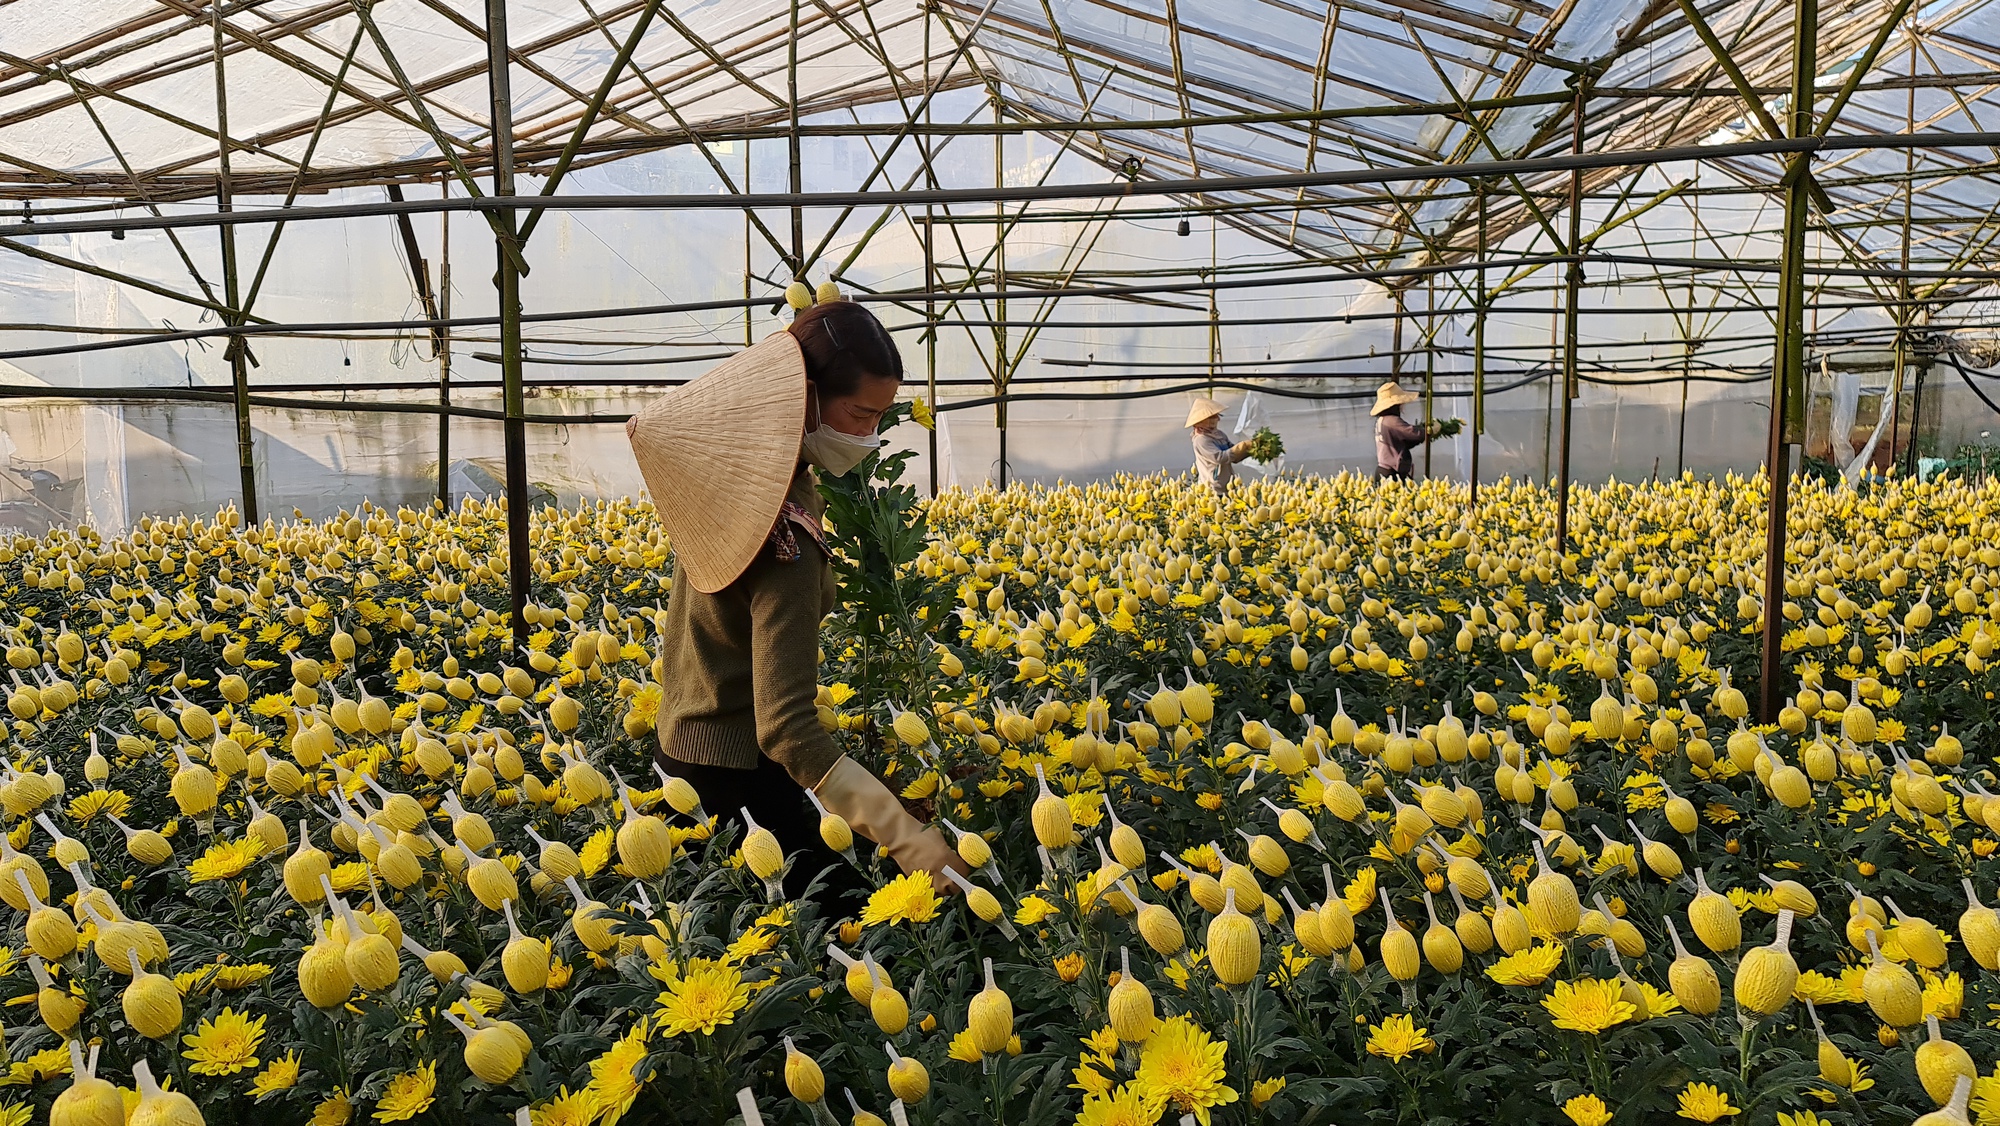 Quỹ hỗ trợ nông dân tỉnh Lâm Đồng giúp người trồng hoa cúc tại TP.Đà Lạt “ăn nên làm ra” - Ảnh 3.